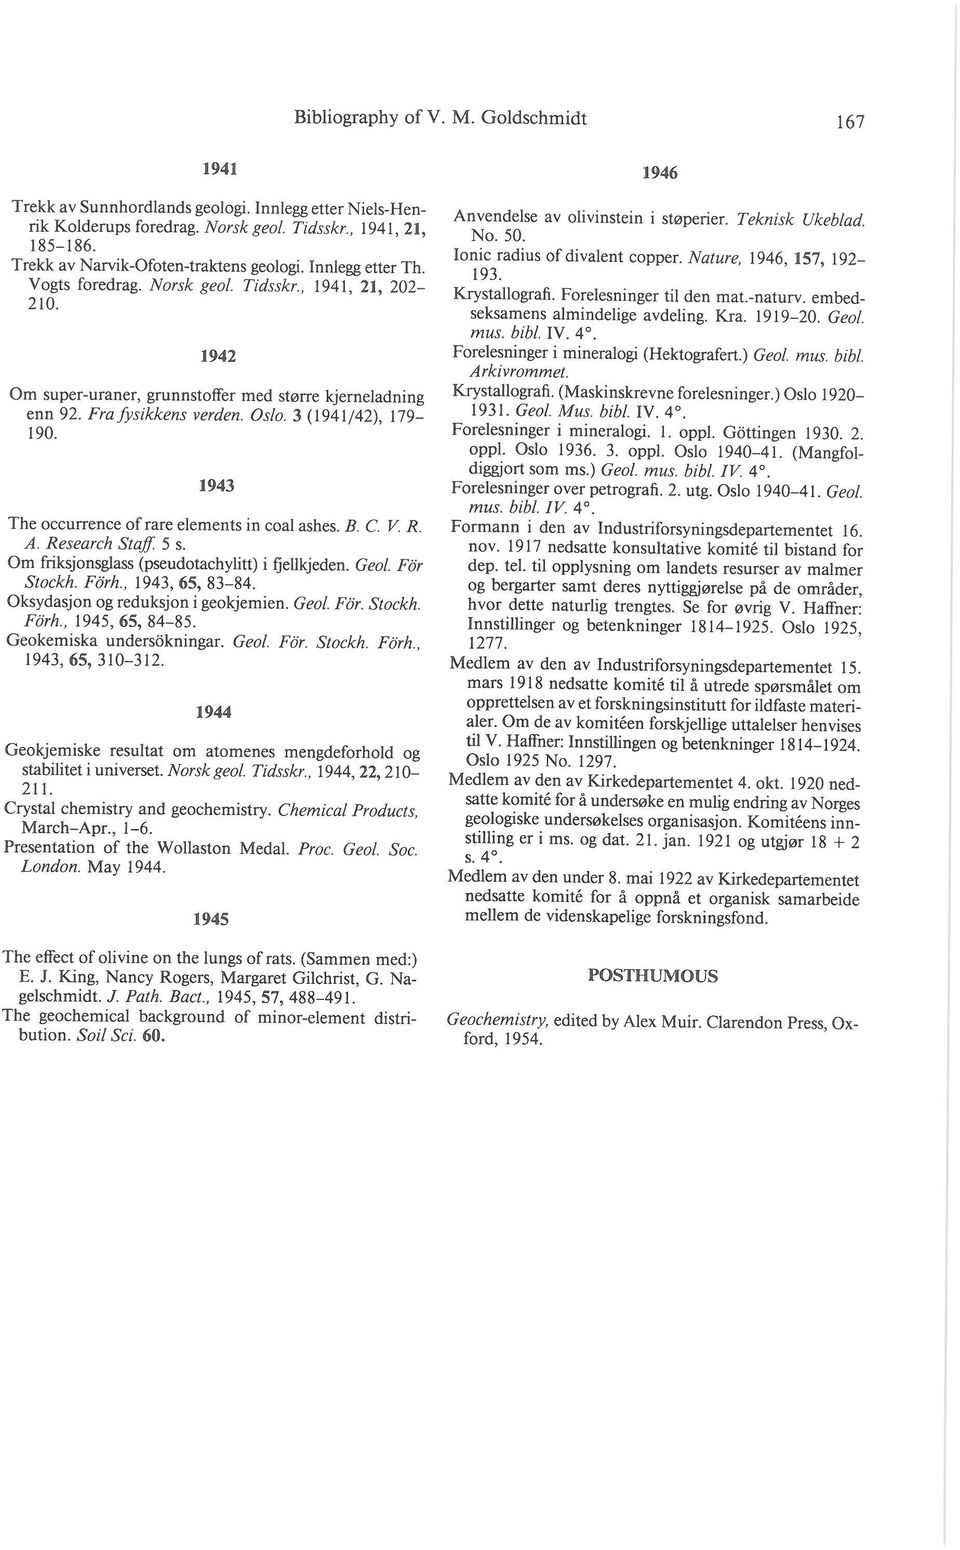 Fra fysikkens verden. Oslo. 3 (1941/42), 179-190. 1943 The occurrence of rare elements in coal ashes. B. C. V. R. A. Research Staff 5 s. Om friksjonsglass (pseudotachylitt) i fjellkjeden. Geol.